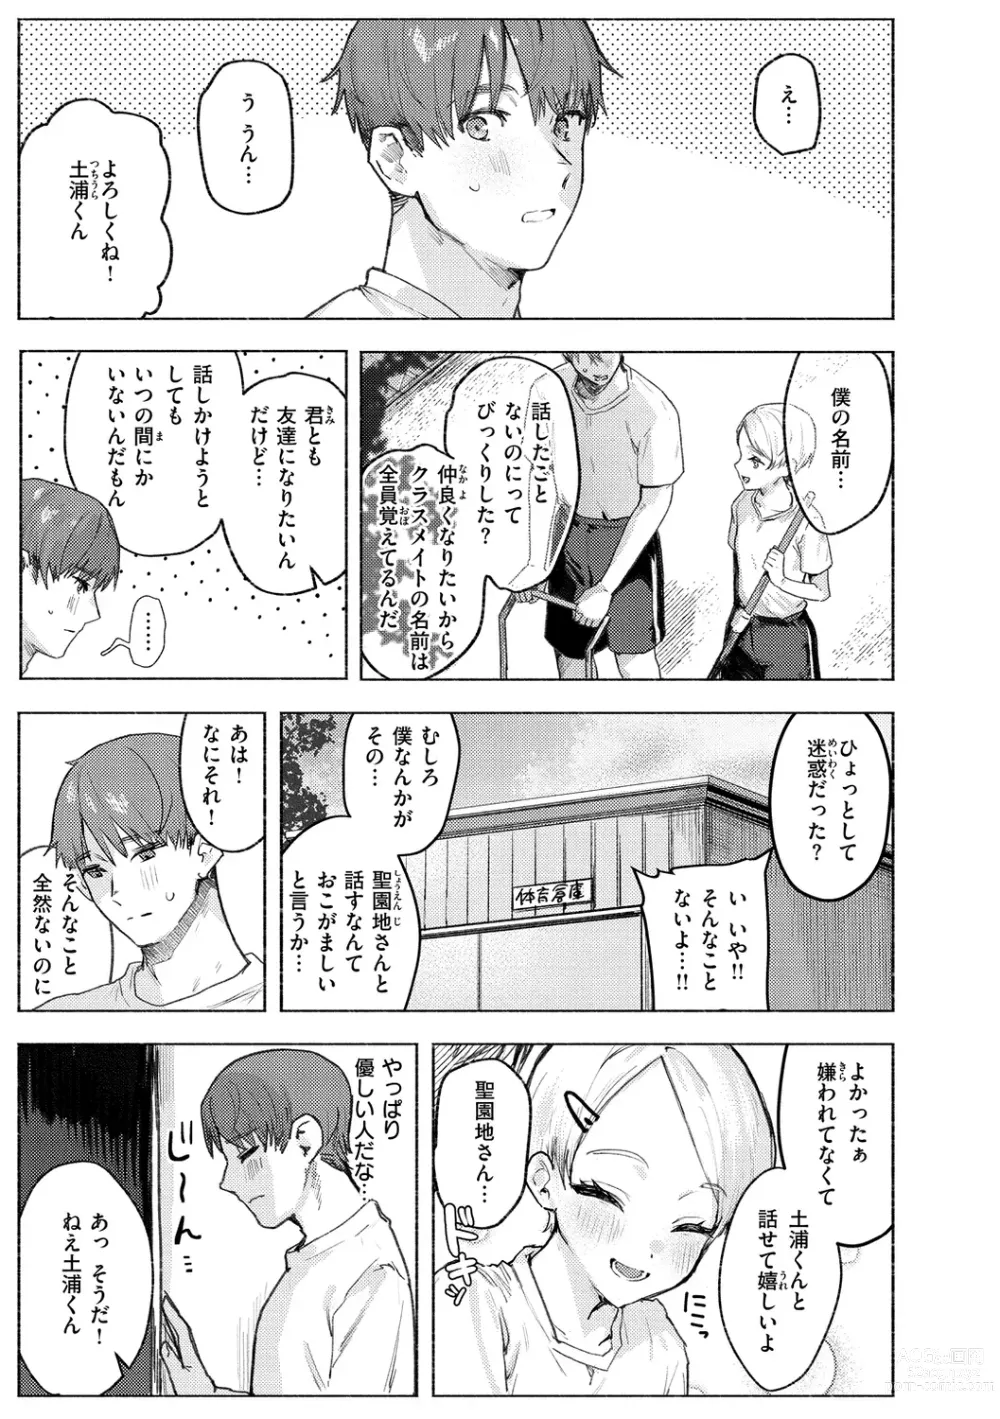 Page 7 of manga Nikushoku Short Cake